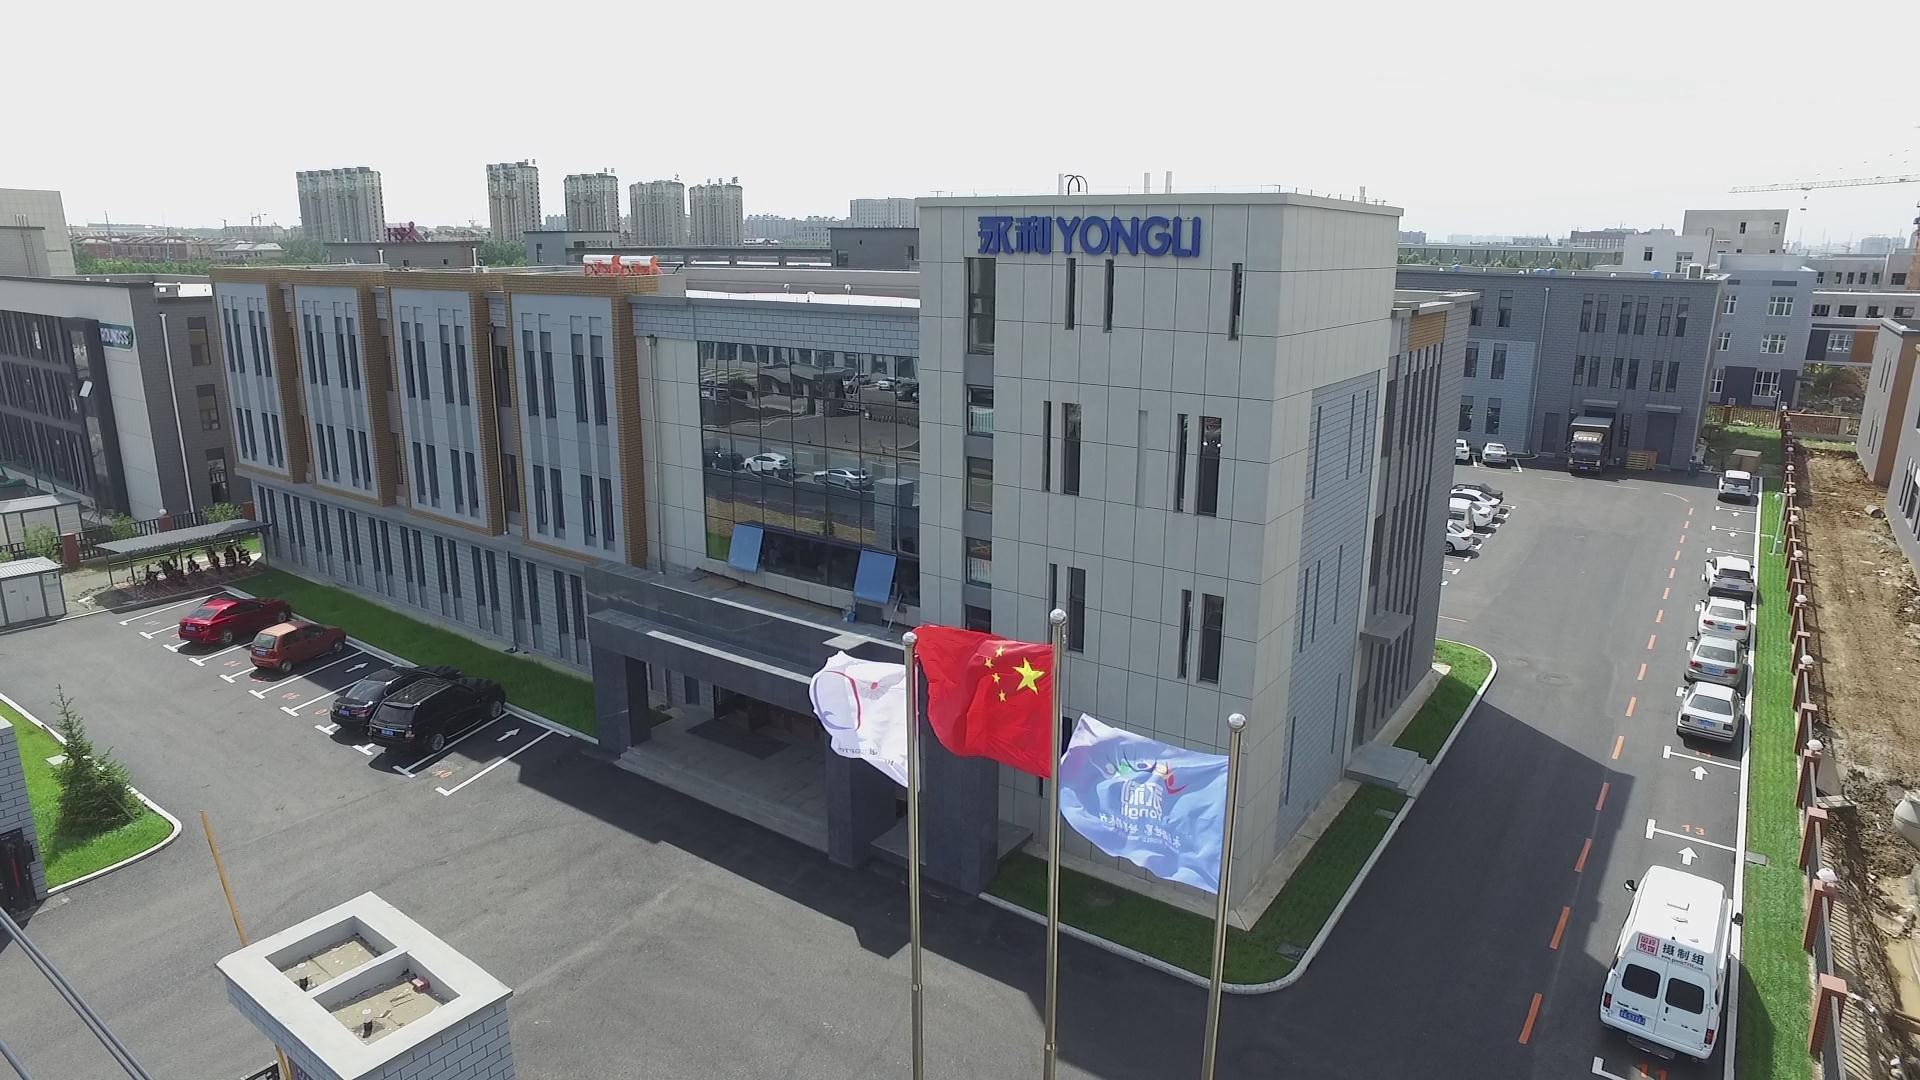 Jilin Yongli Laser Technology Co., Ltd.